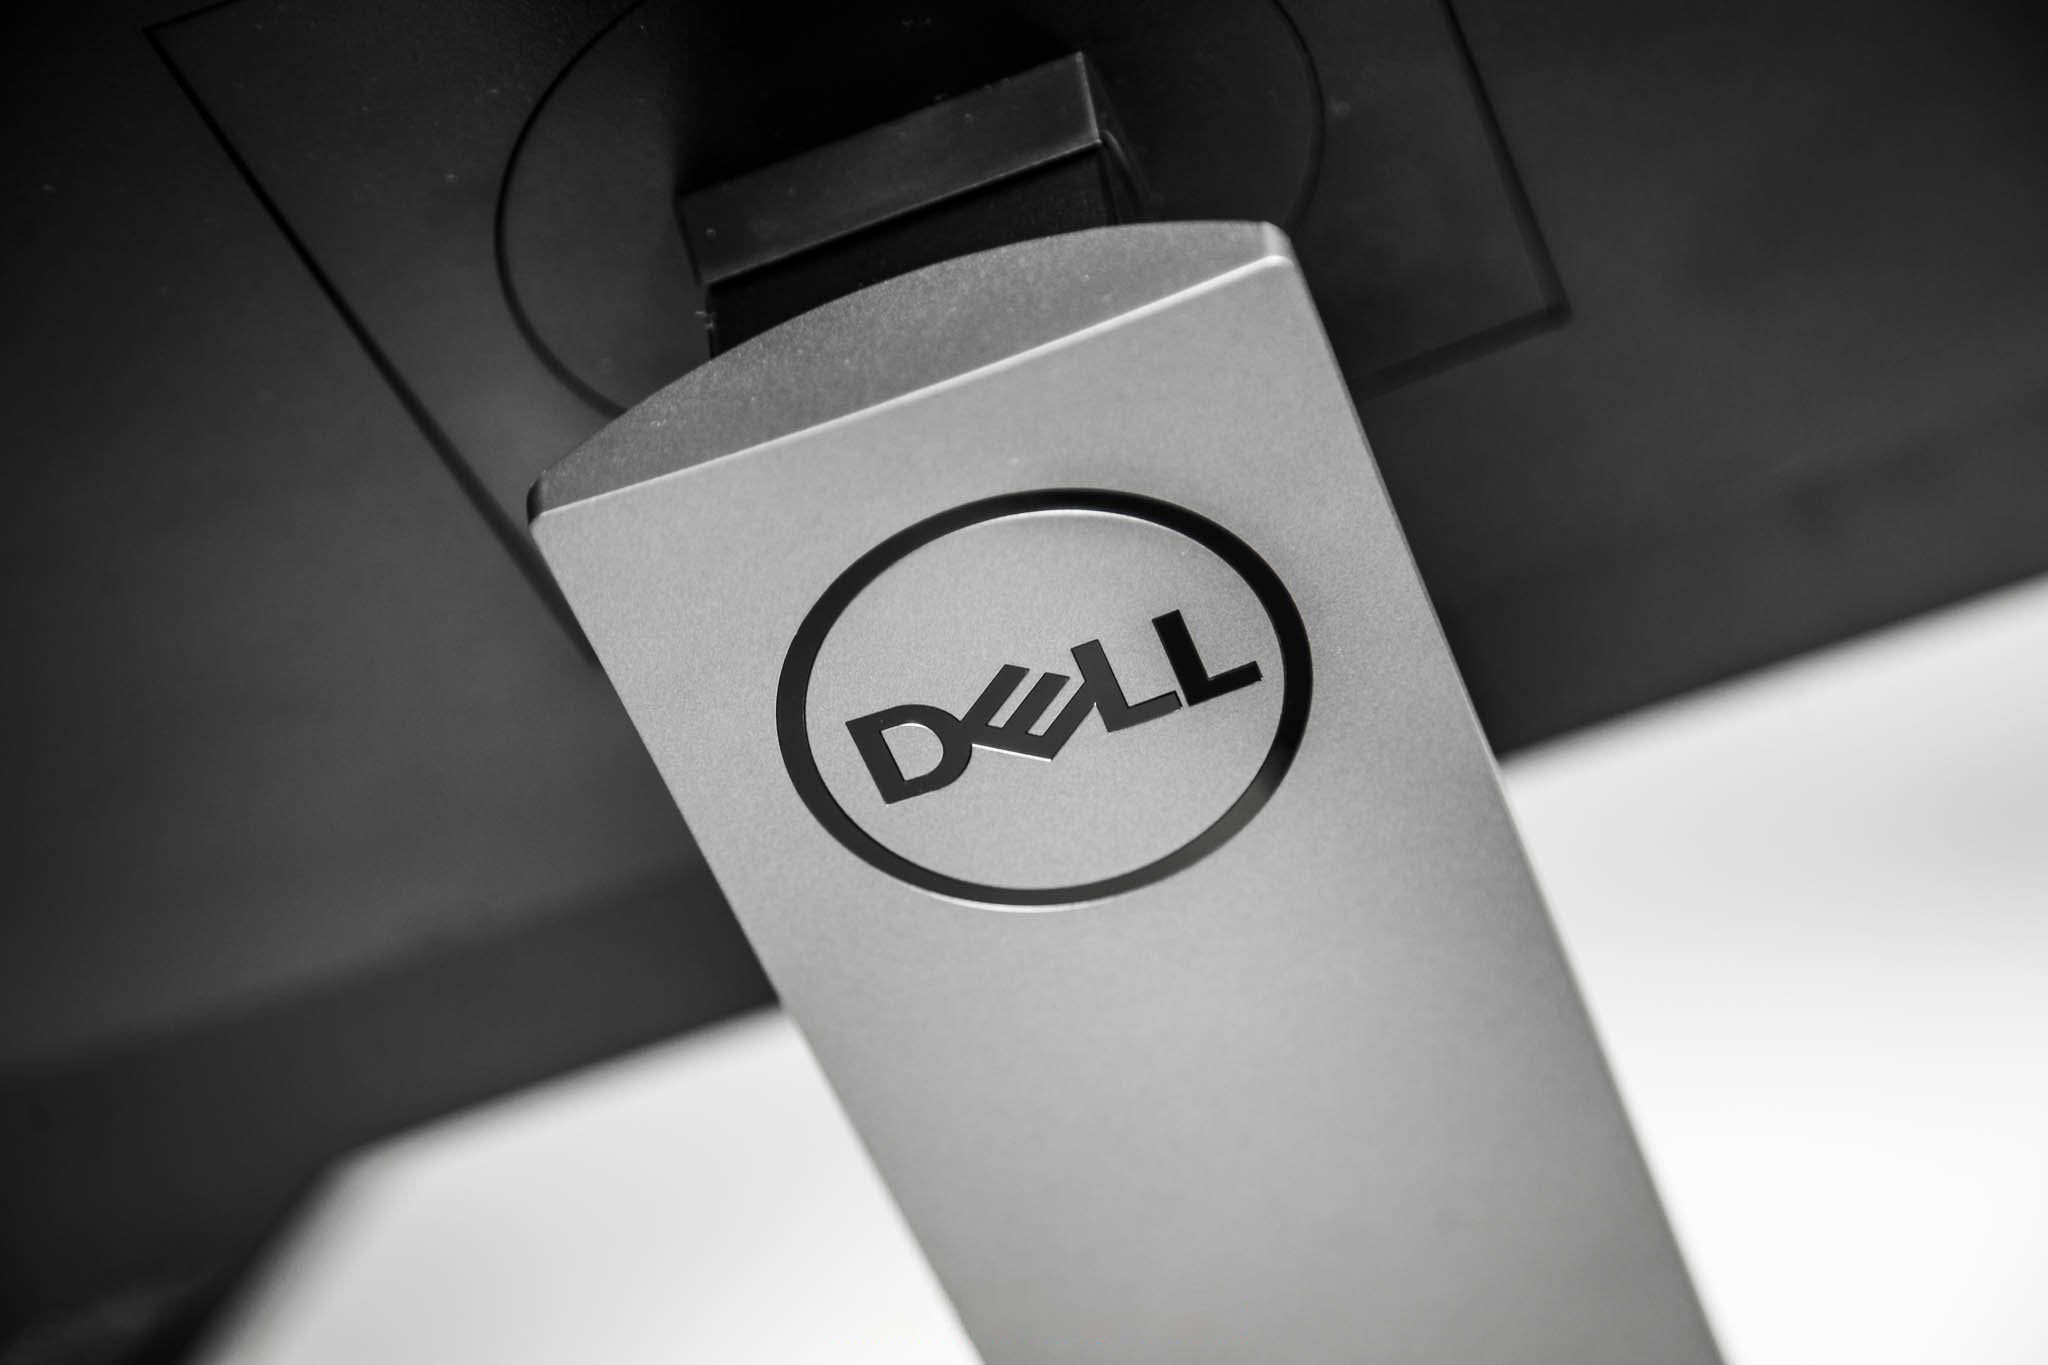 Đánh giá màn hình Dell P2719H: Hiệu năng ổn định ở mức giá tốt